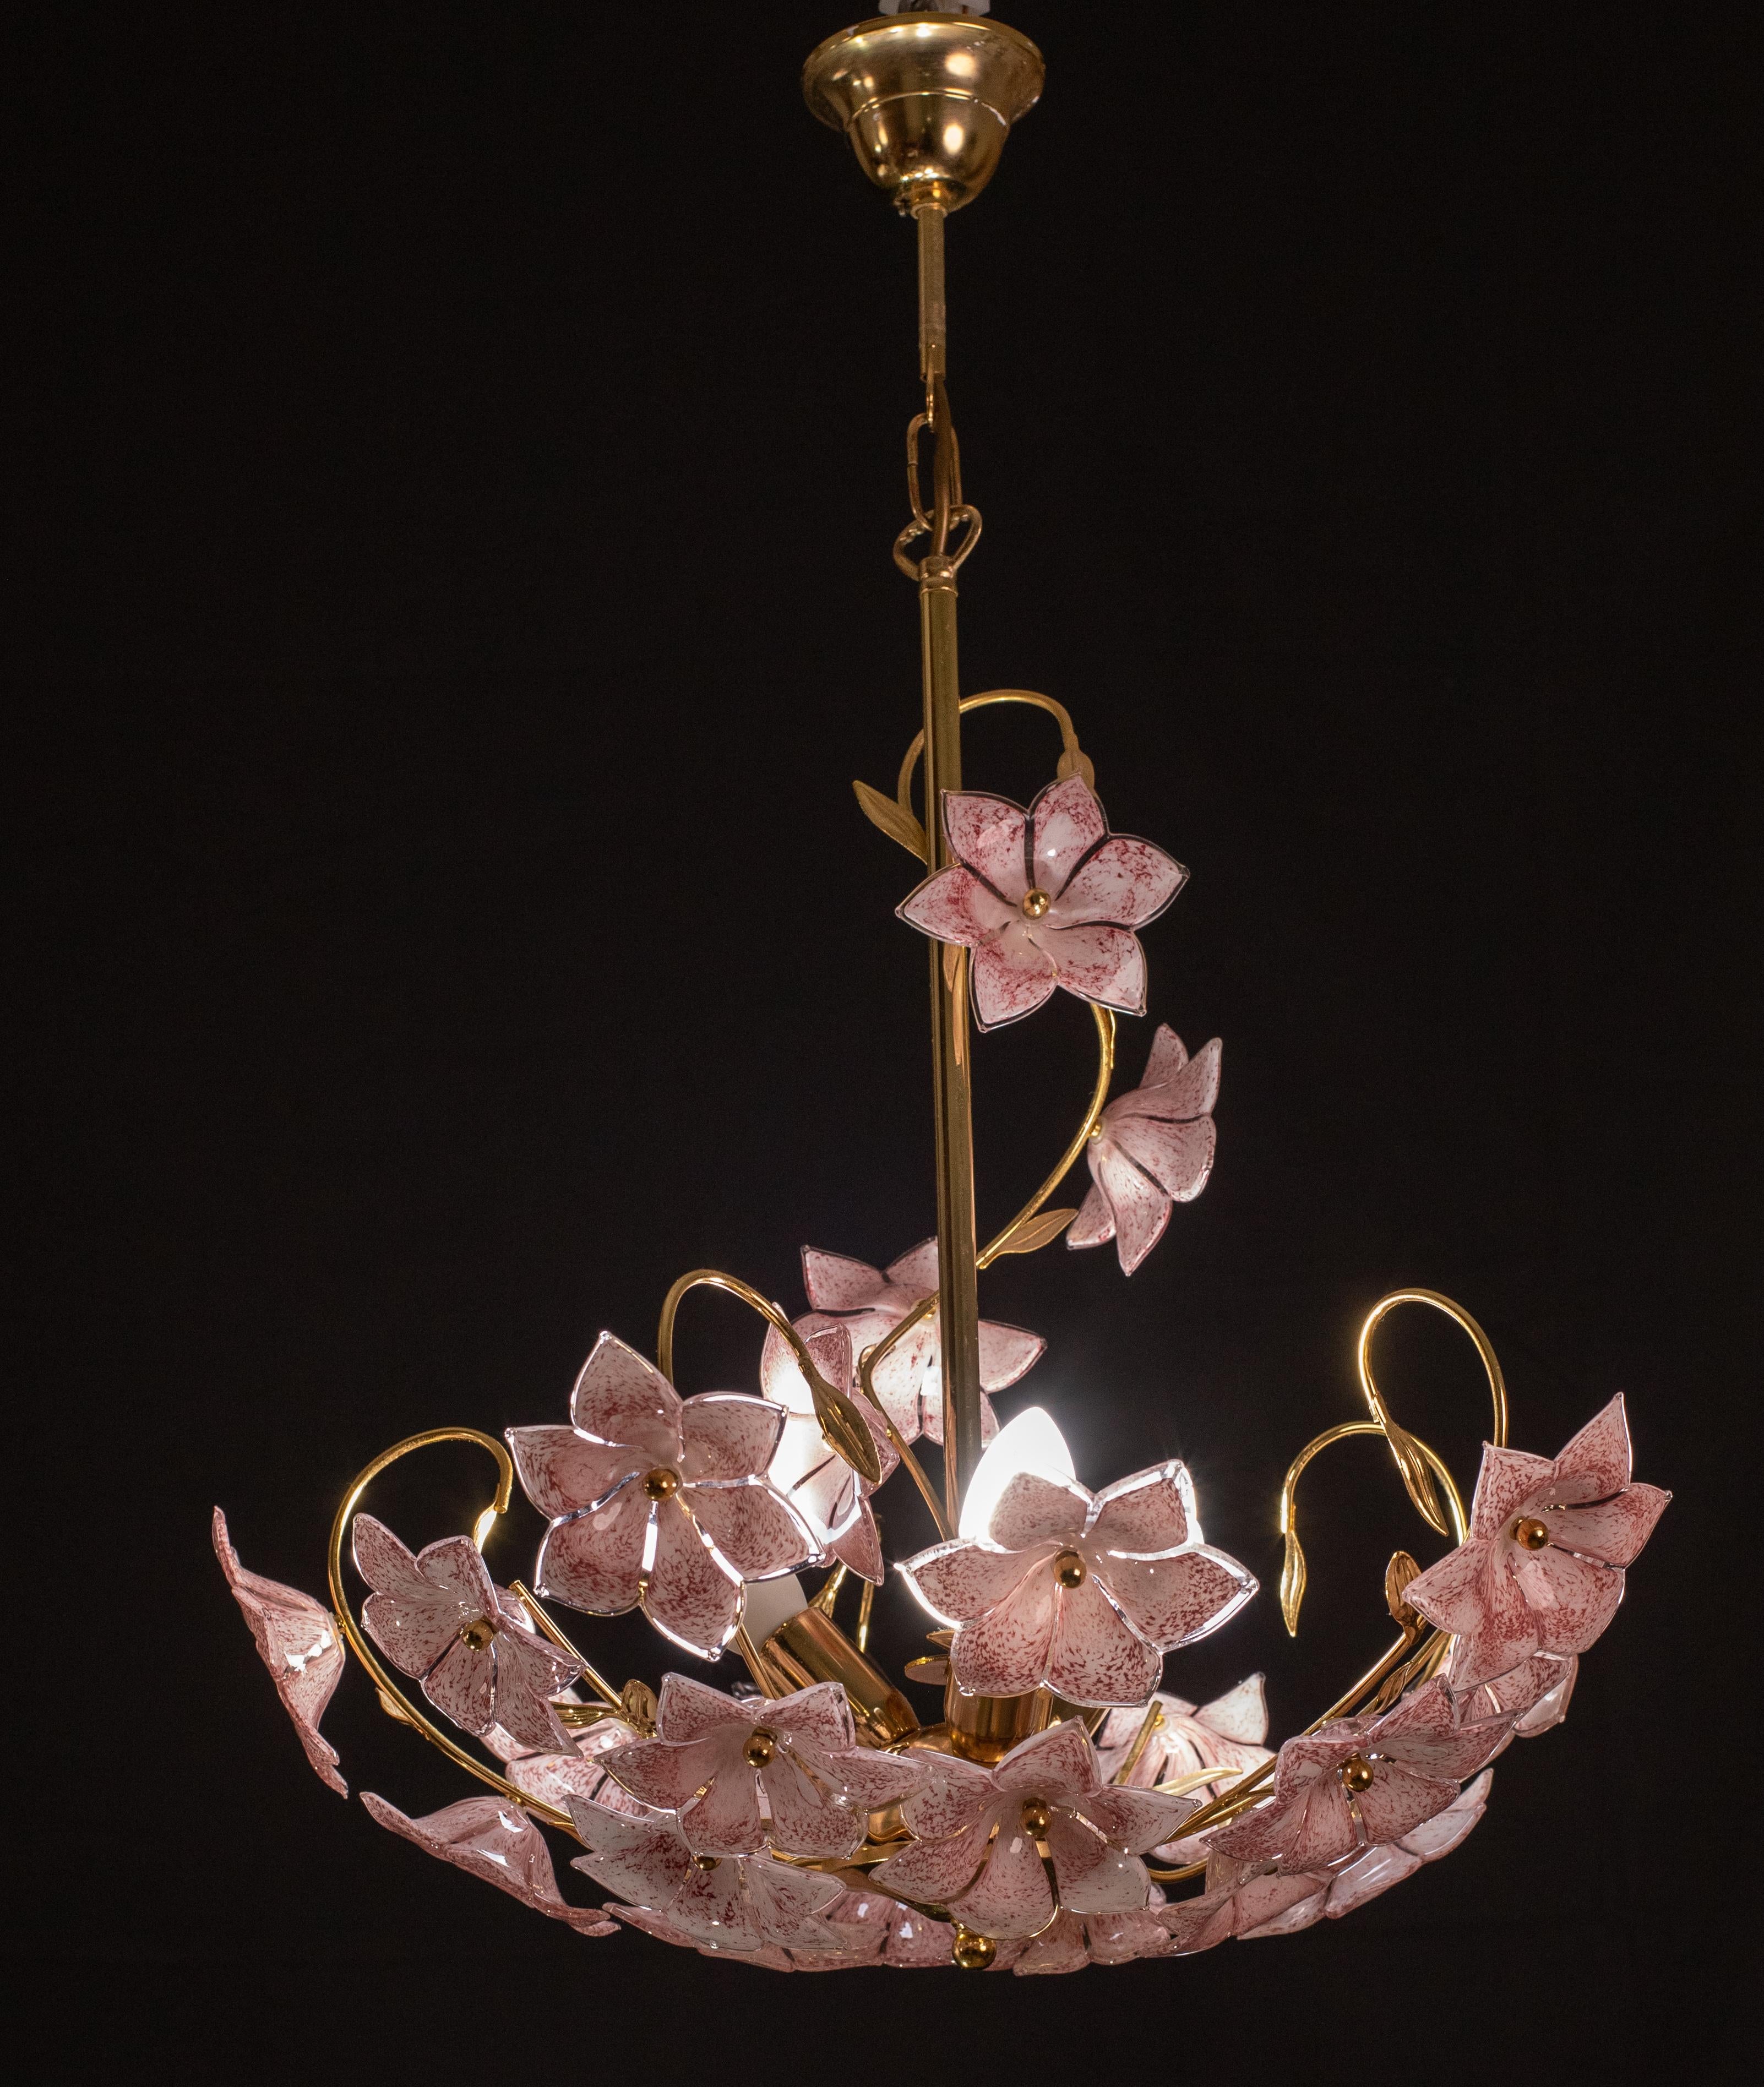 Vintage Murano Glas Kronleuchter voll von rosa Blumen in Murano-Glas.
Der Kronleuchter hat 3 Lichtpunkte mit E14-Fassung, die für Usa-Standards umverdrahtet werden können.
Der Rahmen ist aus Goldbad in gutem Vintage-Zustand.
Die Höhe des